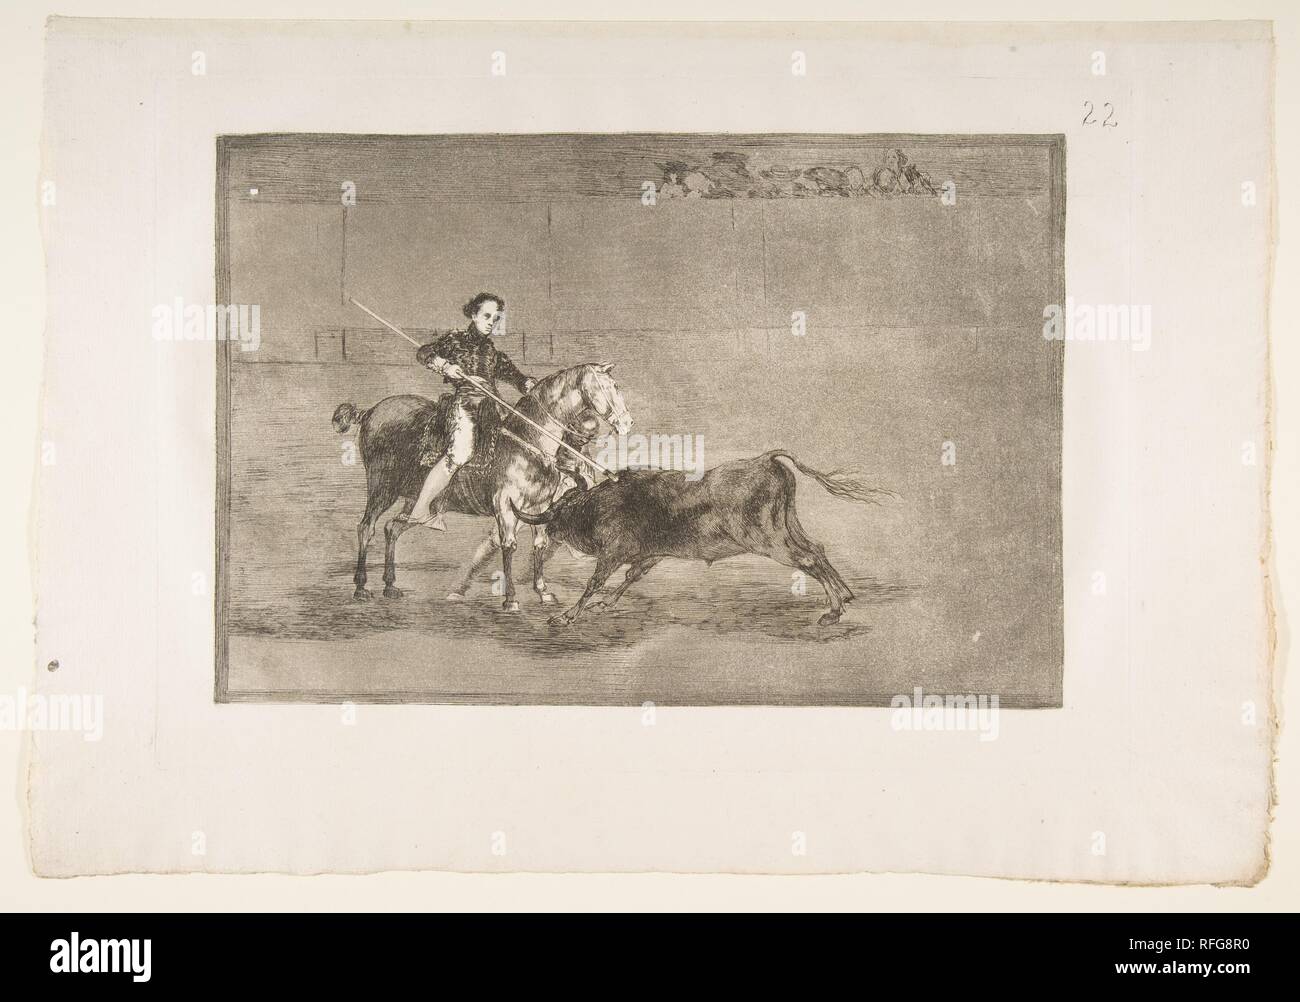 22 Plaque de la Tauromaquia':Manly courage du célèbre Pajuelera dans [l'anneau] à Saragosse. Artiste : Goya (Francisco de Goya y Lucientes (Fuendetodos) espagnol, 1746-1828 Bordeaux). Plaque : 9 Dimensions : 13/16 x 13 3/4 in. (25 × 35 cm) feuille : 12 × 3/16 17 7/16 po. (30,9 × 44,3 cm). Date : 1816. Musée : Metropolitan Museum of Art, New York, USA. Banque D'Images